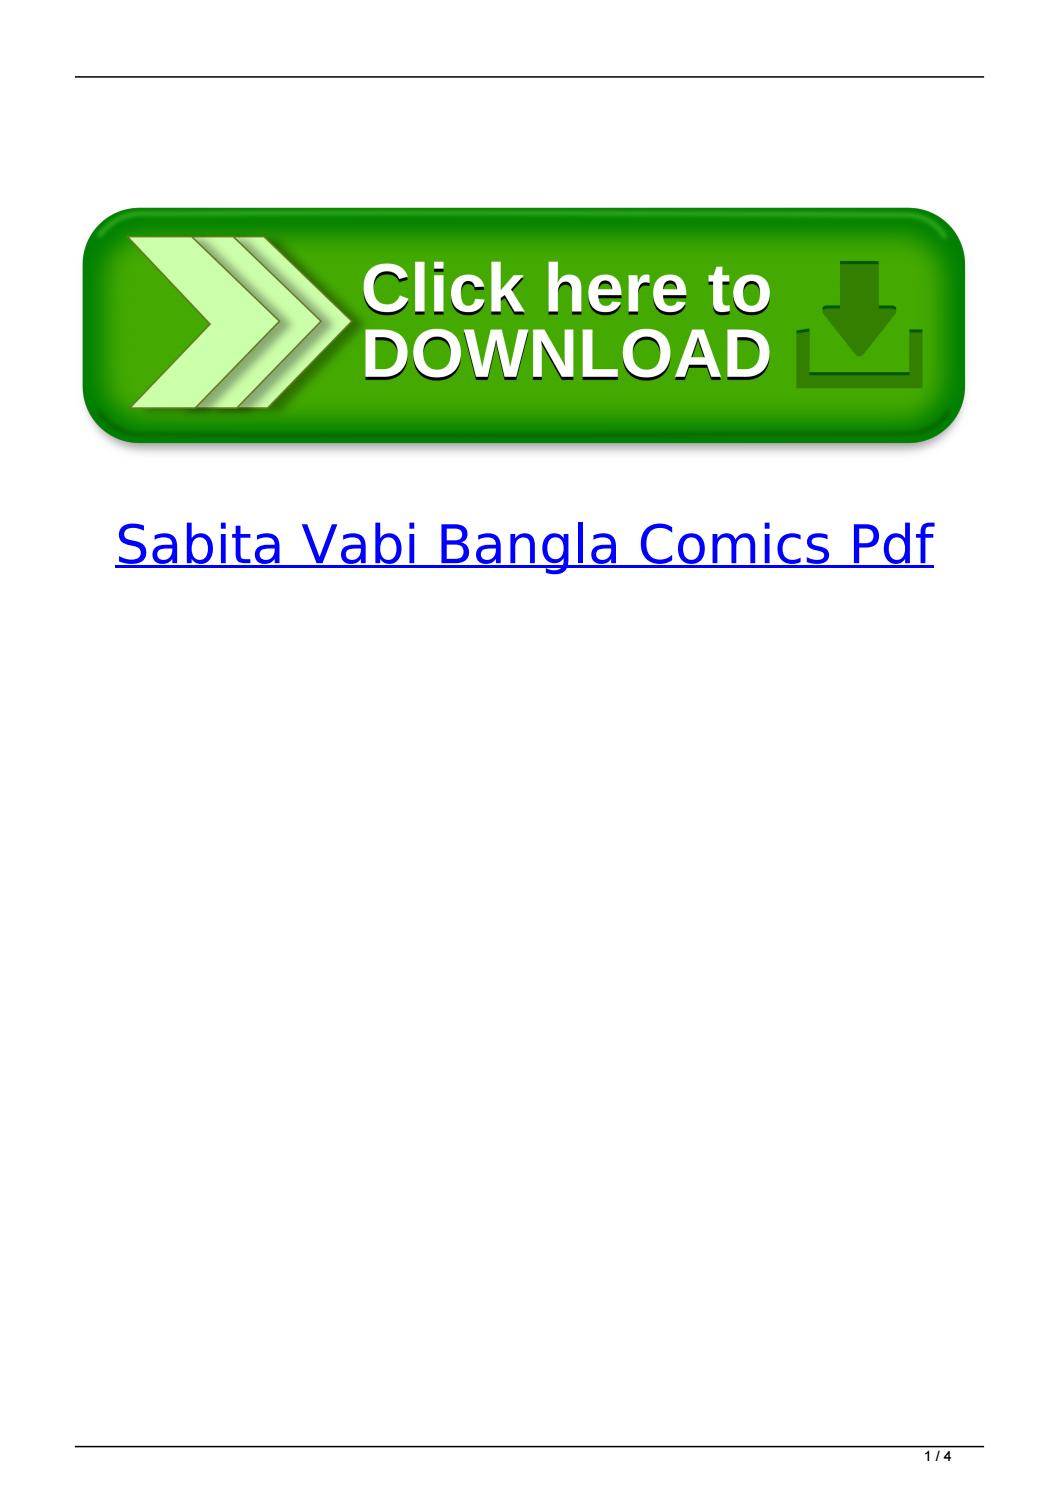 savita bangla pdf